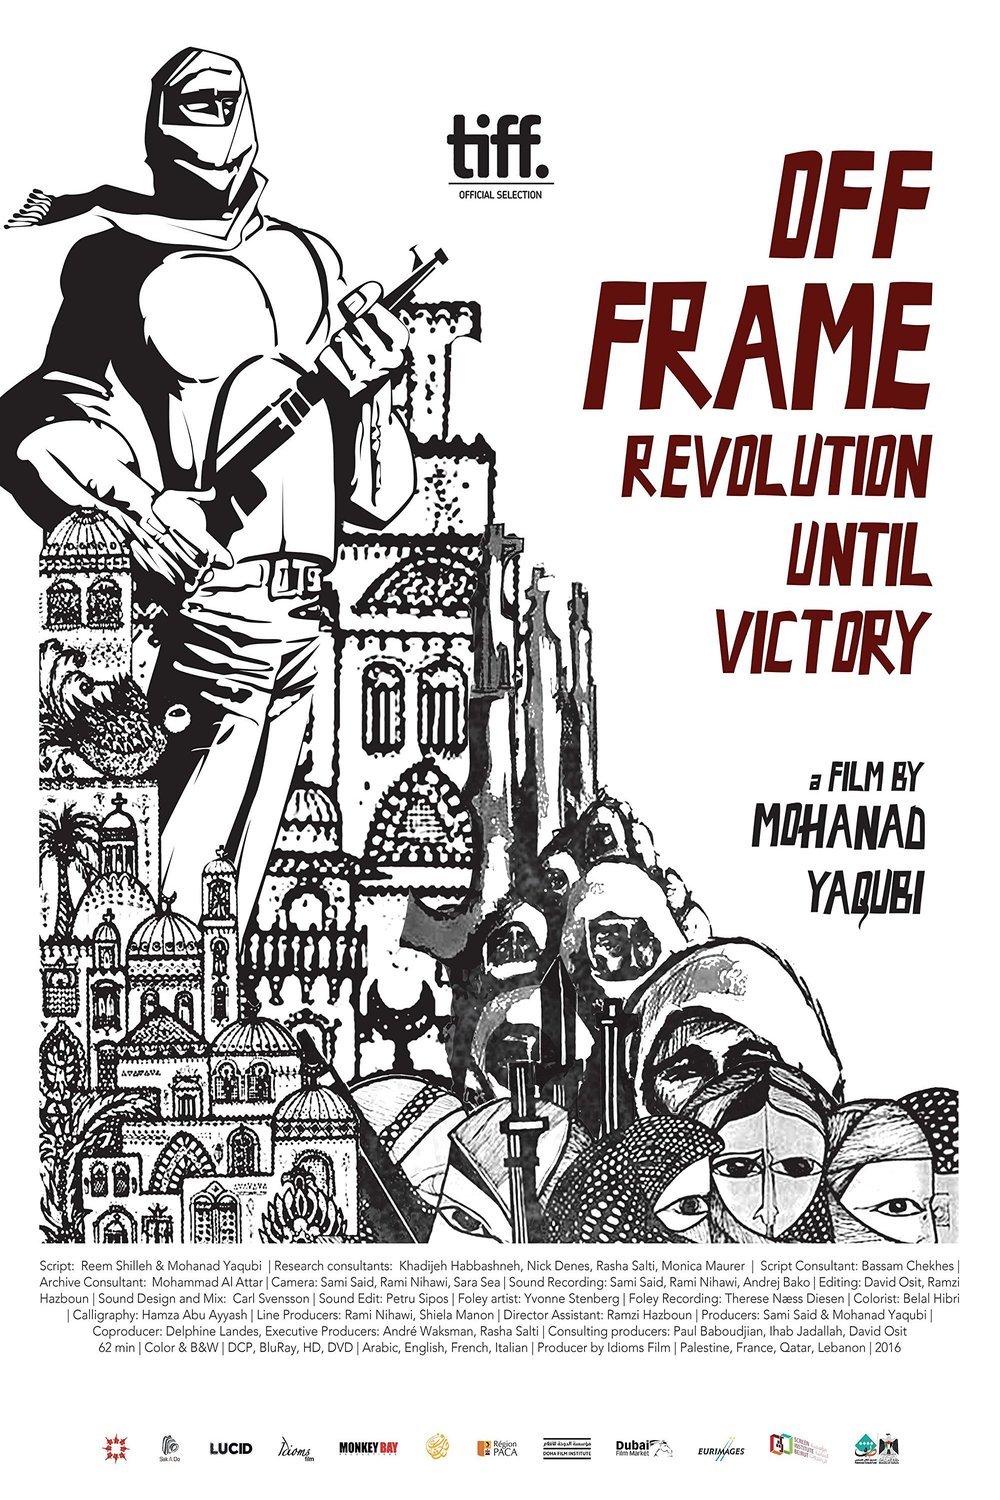 L'affiche du film Off Frame AKA Revolution Until Victory